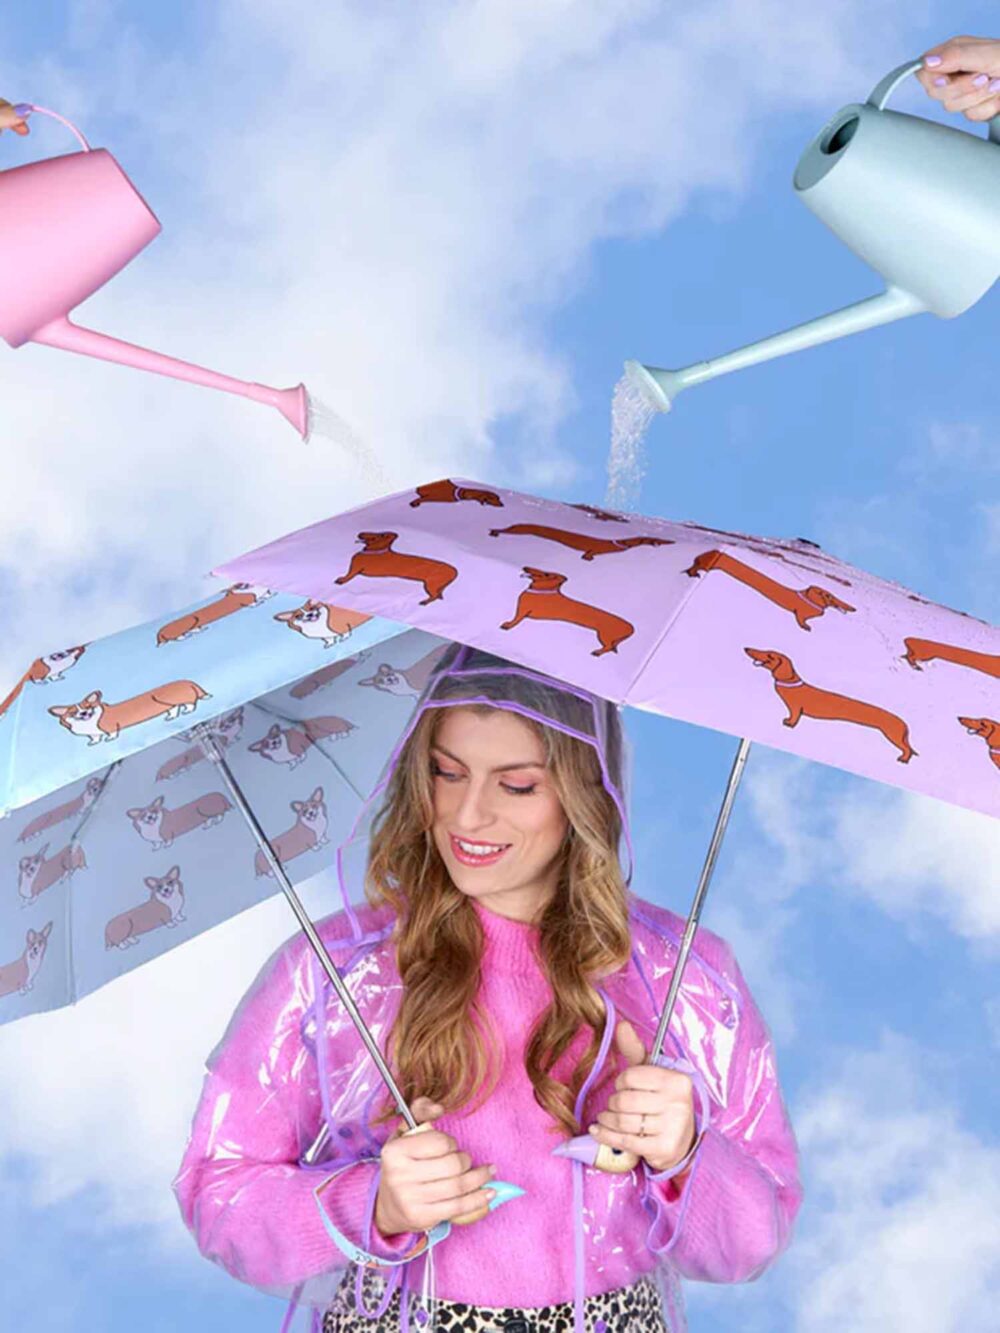 paraply, cou cou suzette paraply i samarbejde med original duckhead, lilla paraply med gravhunde